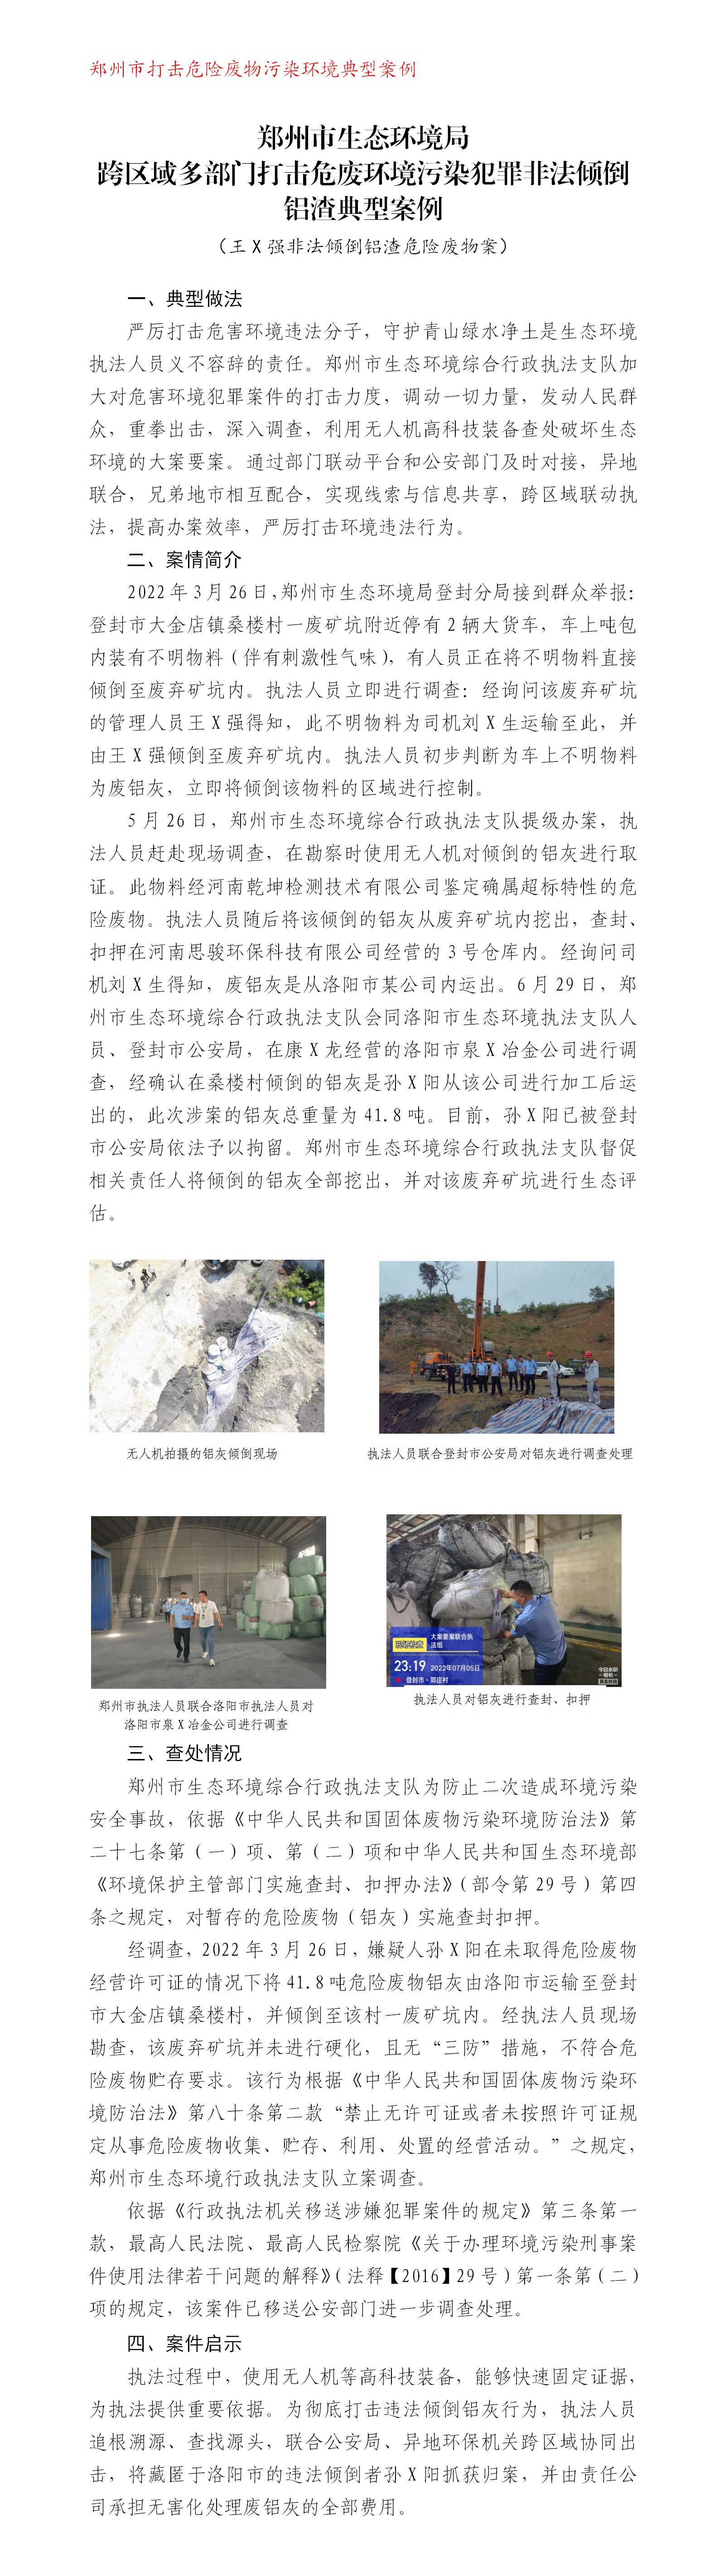 20221108--打击危险废物--郑州市生态环境局打击违法倾倒铝灰典型案例(终)_01.png